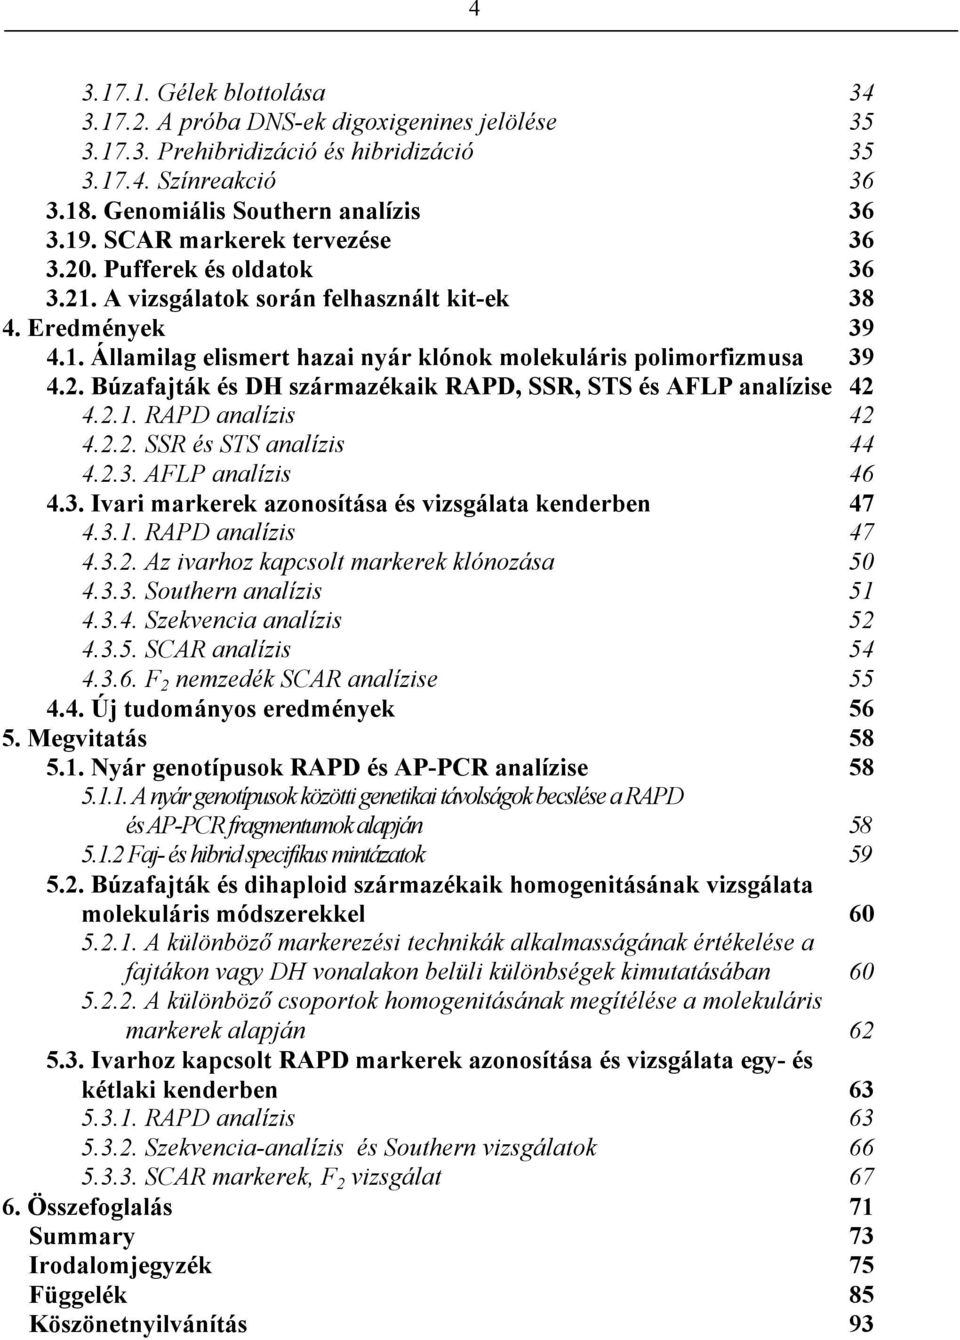 2.1. RAPD analízis 42 4.2.2. SSR és STS analízis 44 4.2.3. AFLP analízis 46 4.3. Ivari markerek azonosítása és vizsgálata kenderben 47 4.3.1. RAPD analízis 47 4.3.2. Az ivarhoz kapcsolt markerek klónozása 50 4.